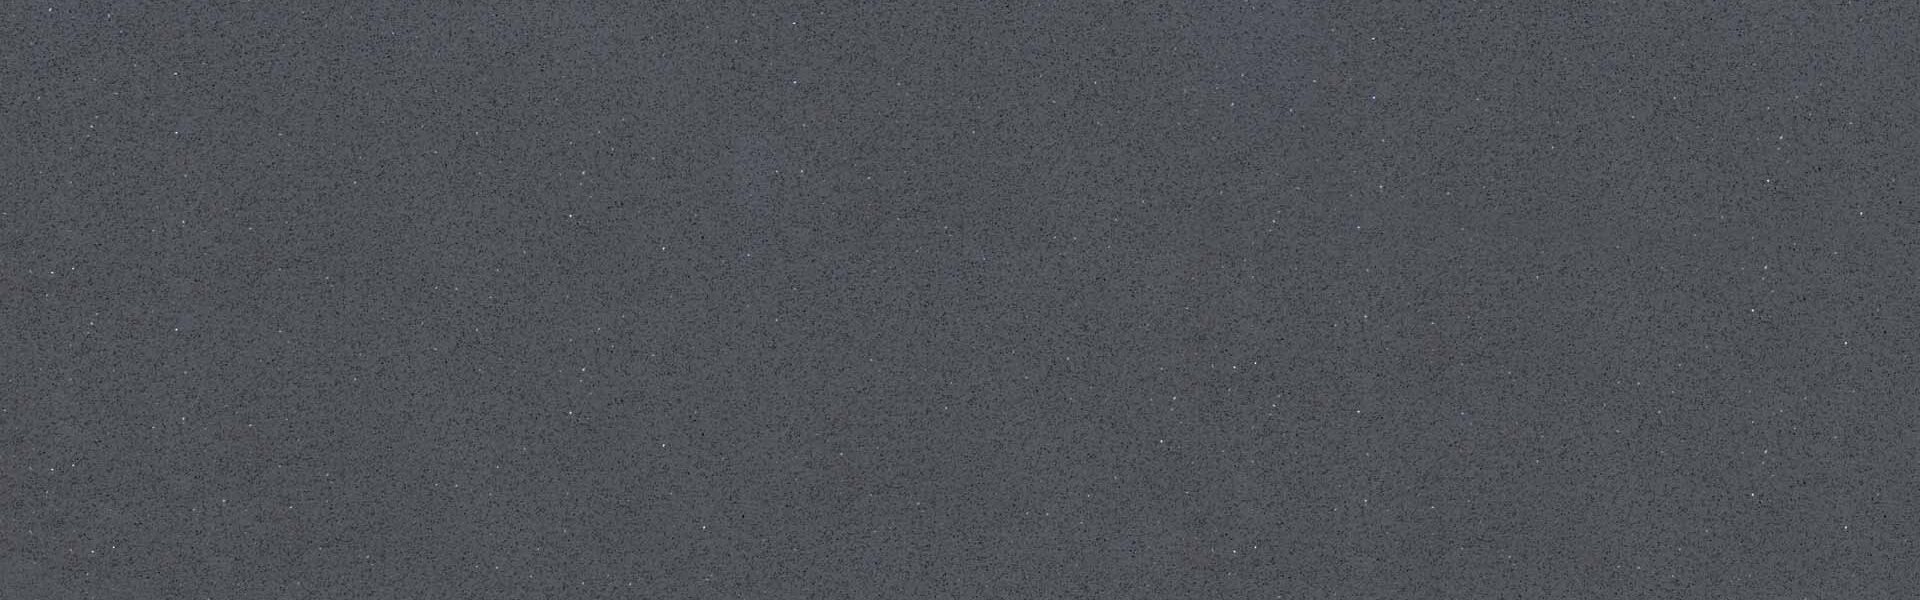 Horizon Stone Quartz Galaxy Grey